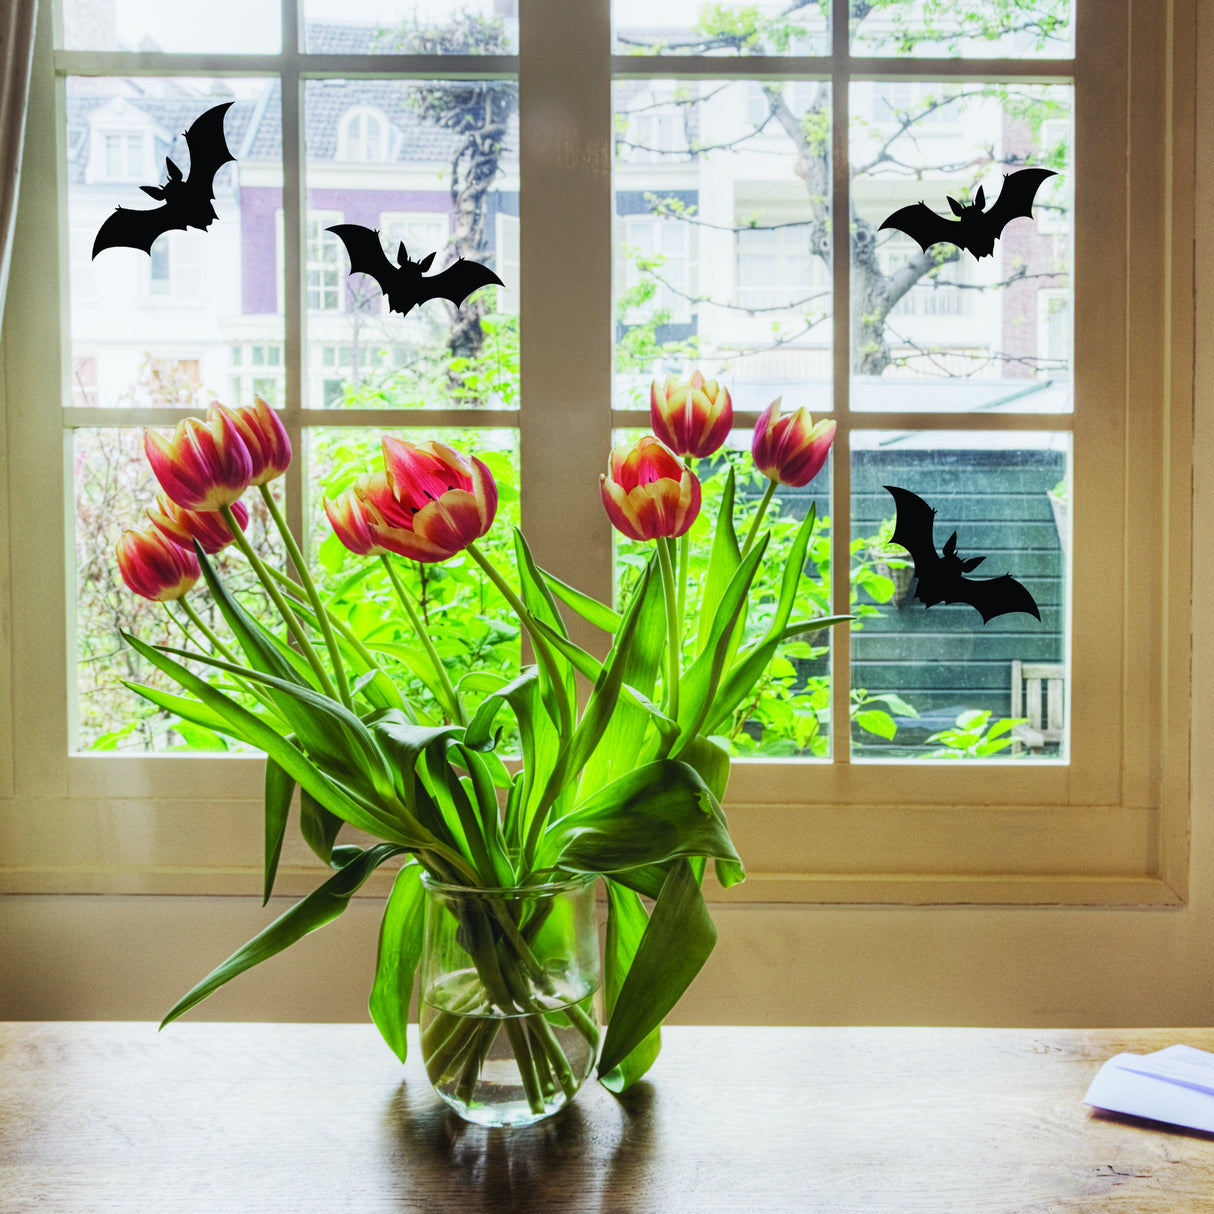 25x Halloween Bats Window Decals - Window Stickers For October 31st